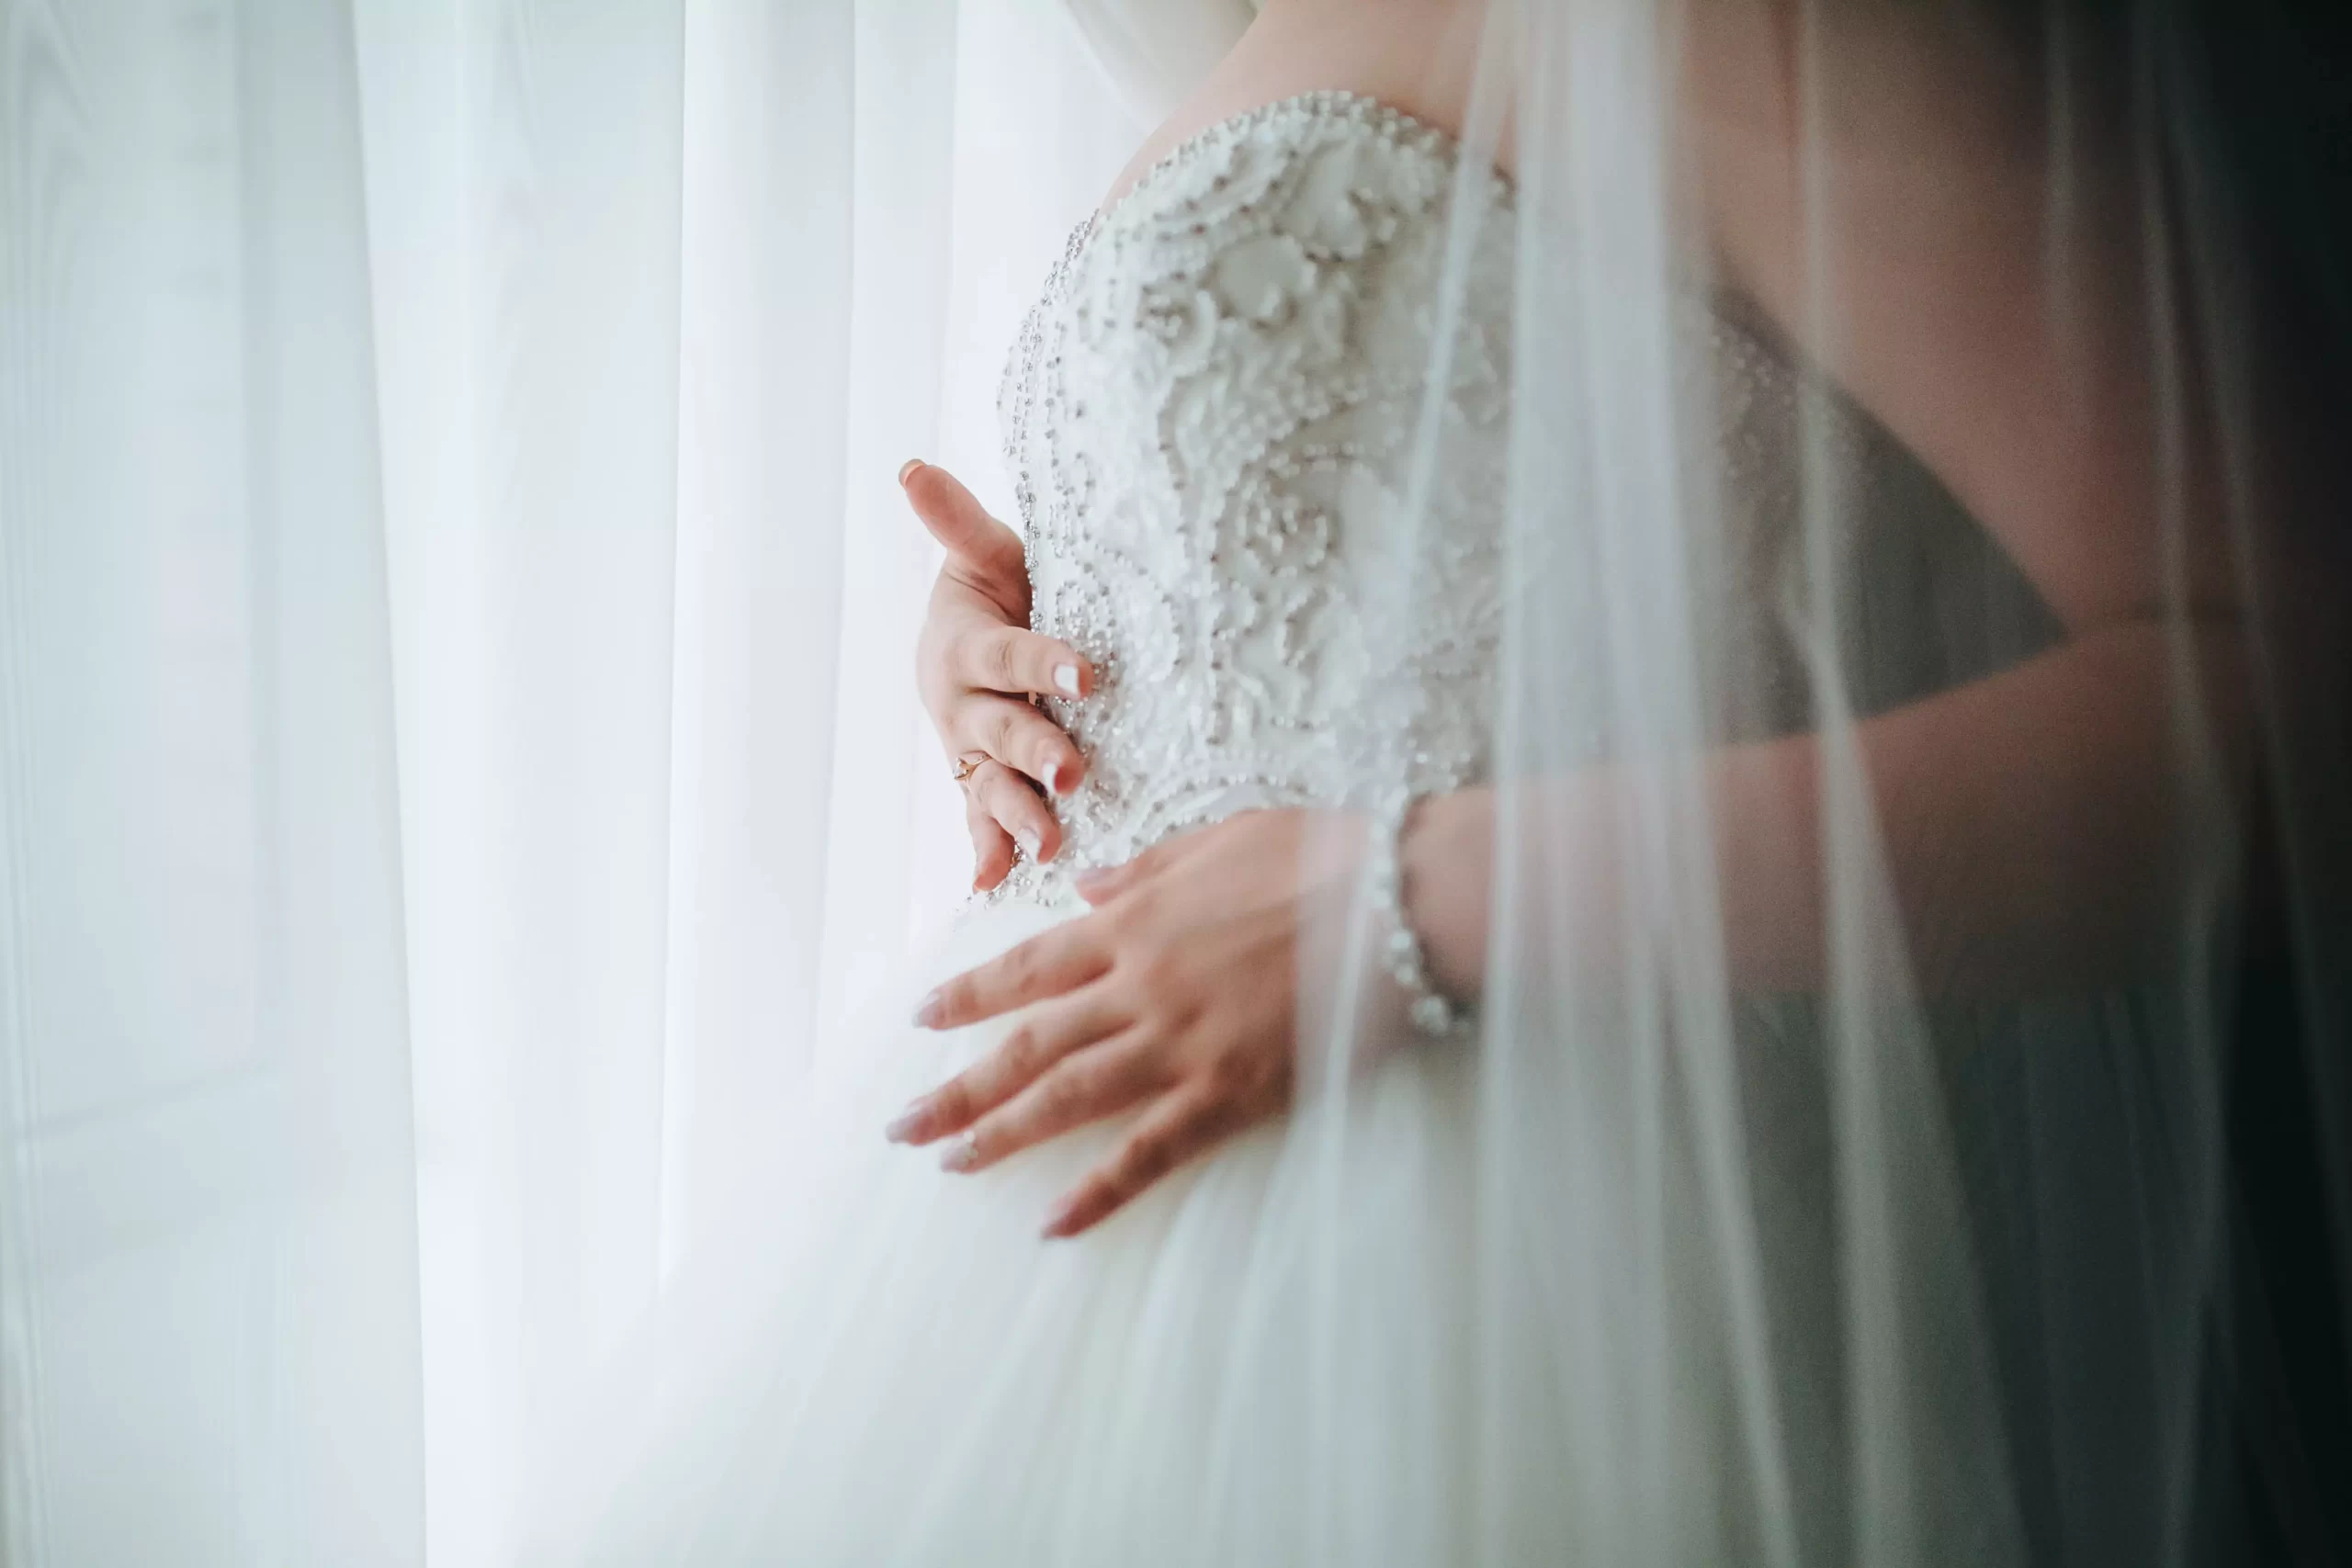 Mulher usando um vestido de noiva com o corpete detalhado. A foto mostra ela passando as mãos nos detalher do corpete.